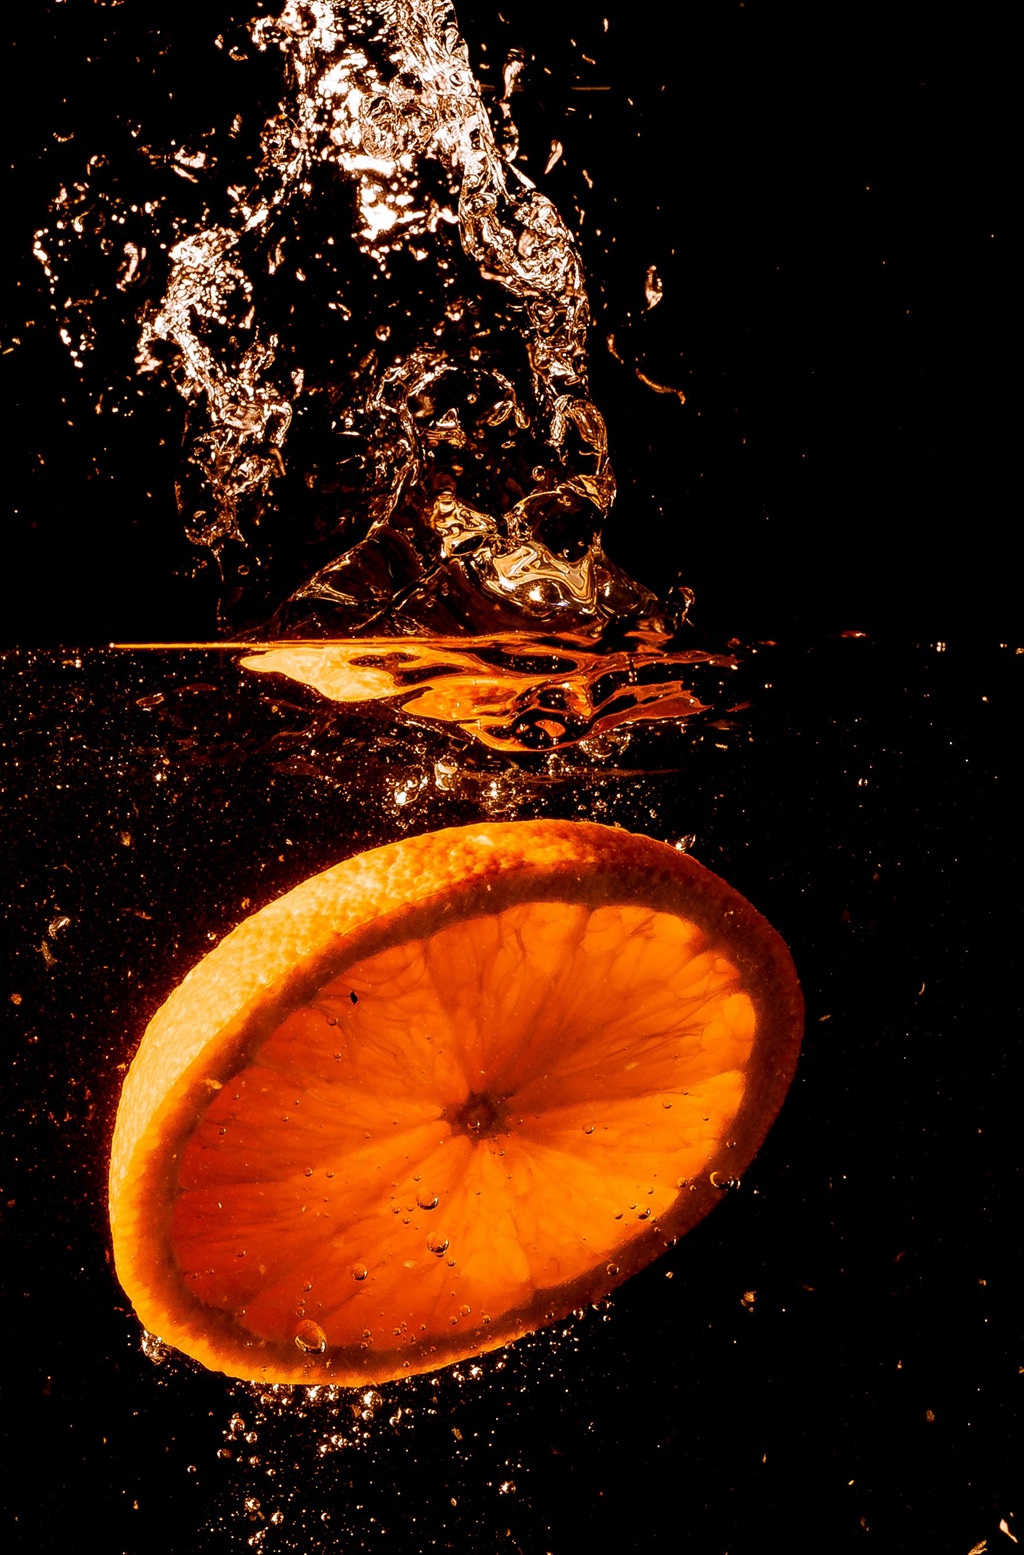 橙子 切片的橙子 金黄美味水果橙子摄影图片图片